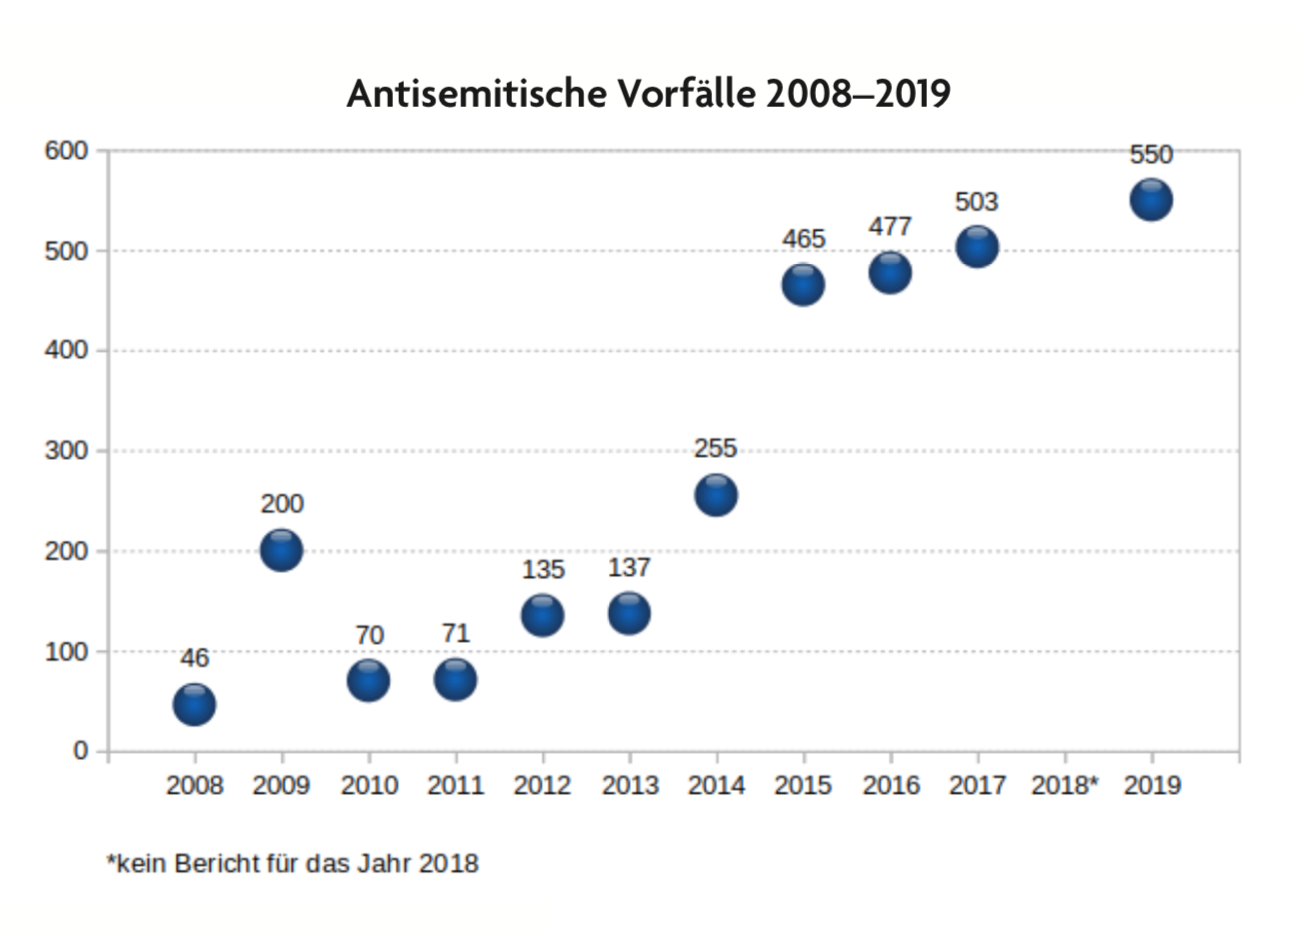 Zeitreihe antisemitische Vorfälle: 46 im Jahr 2008, 550 im Jahr 2019